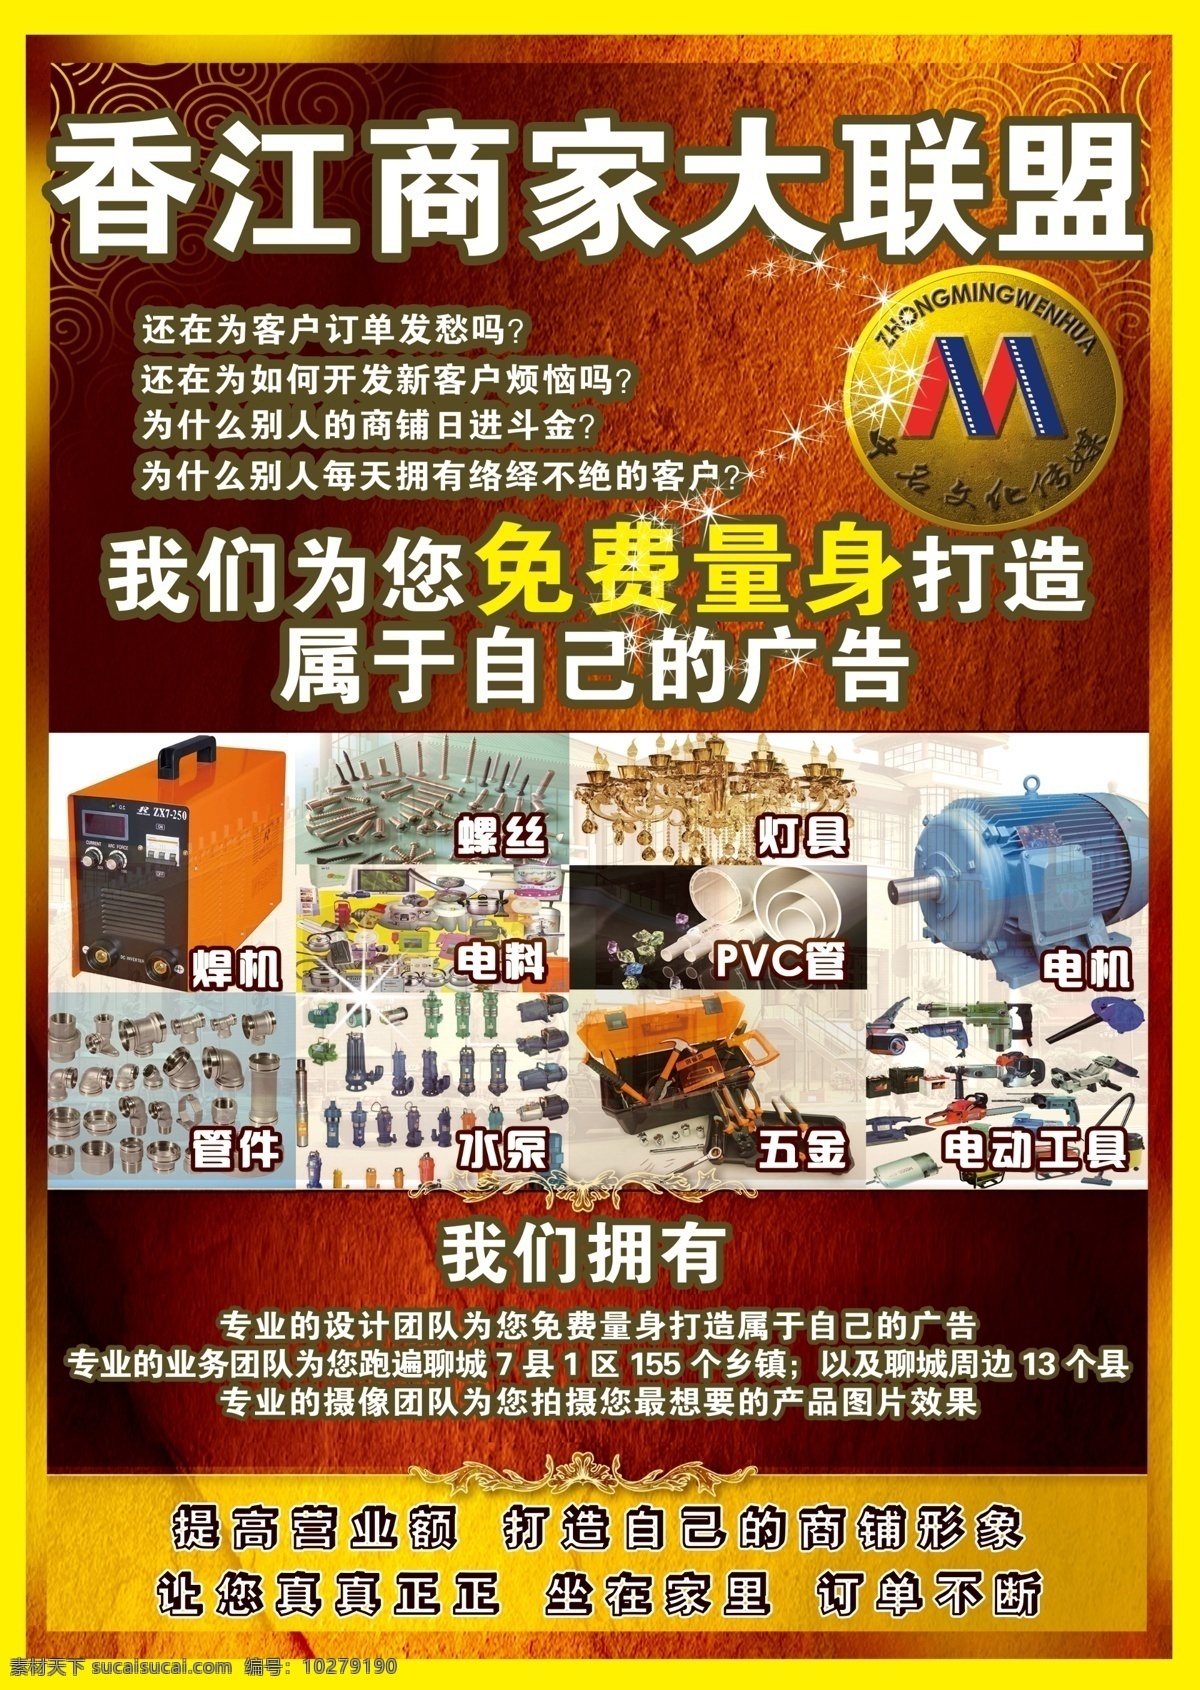 商业宣传页 香江 商家 大联盟 量身打造 免费 焊机 电机 管件 电动工具 pvc管 灯具 黄色